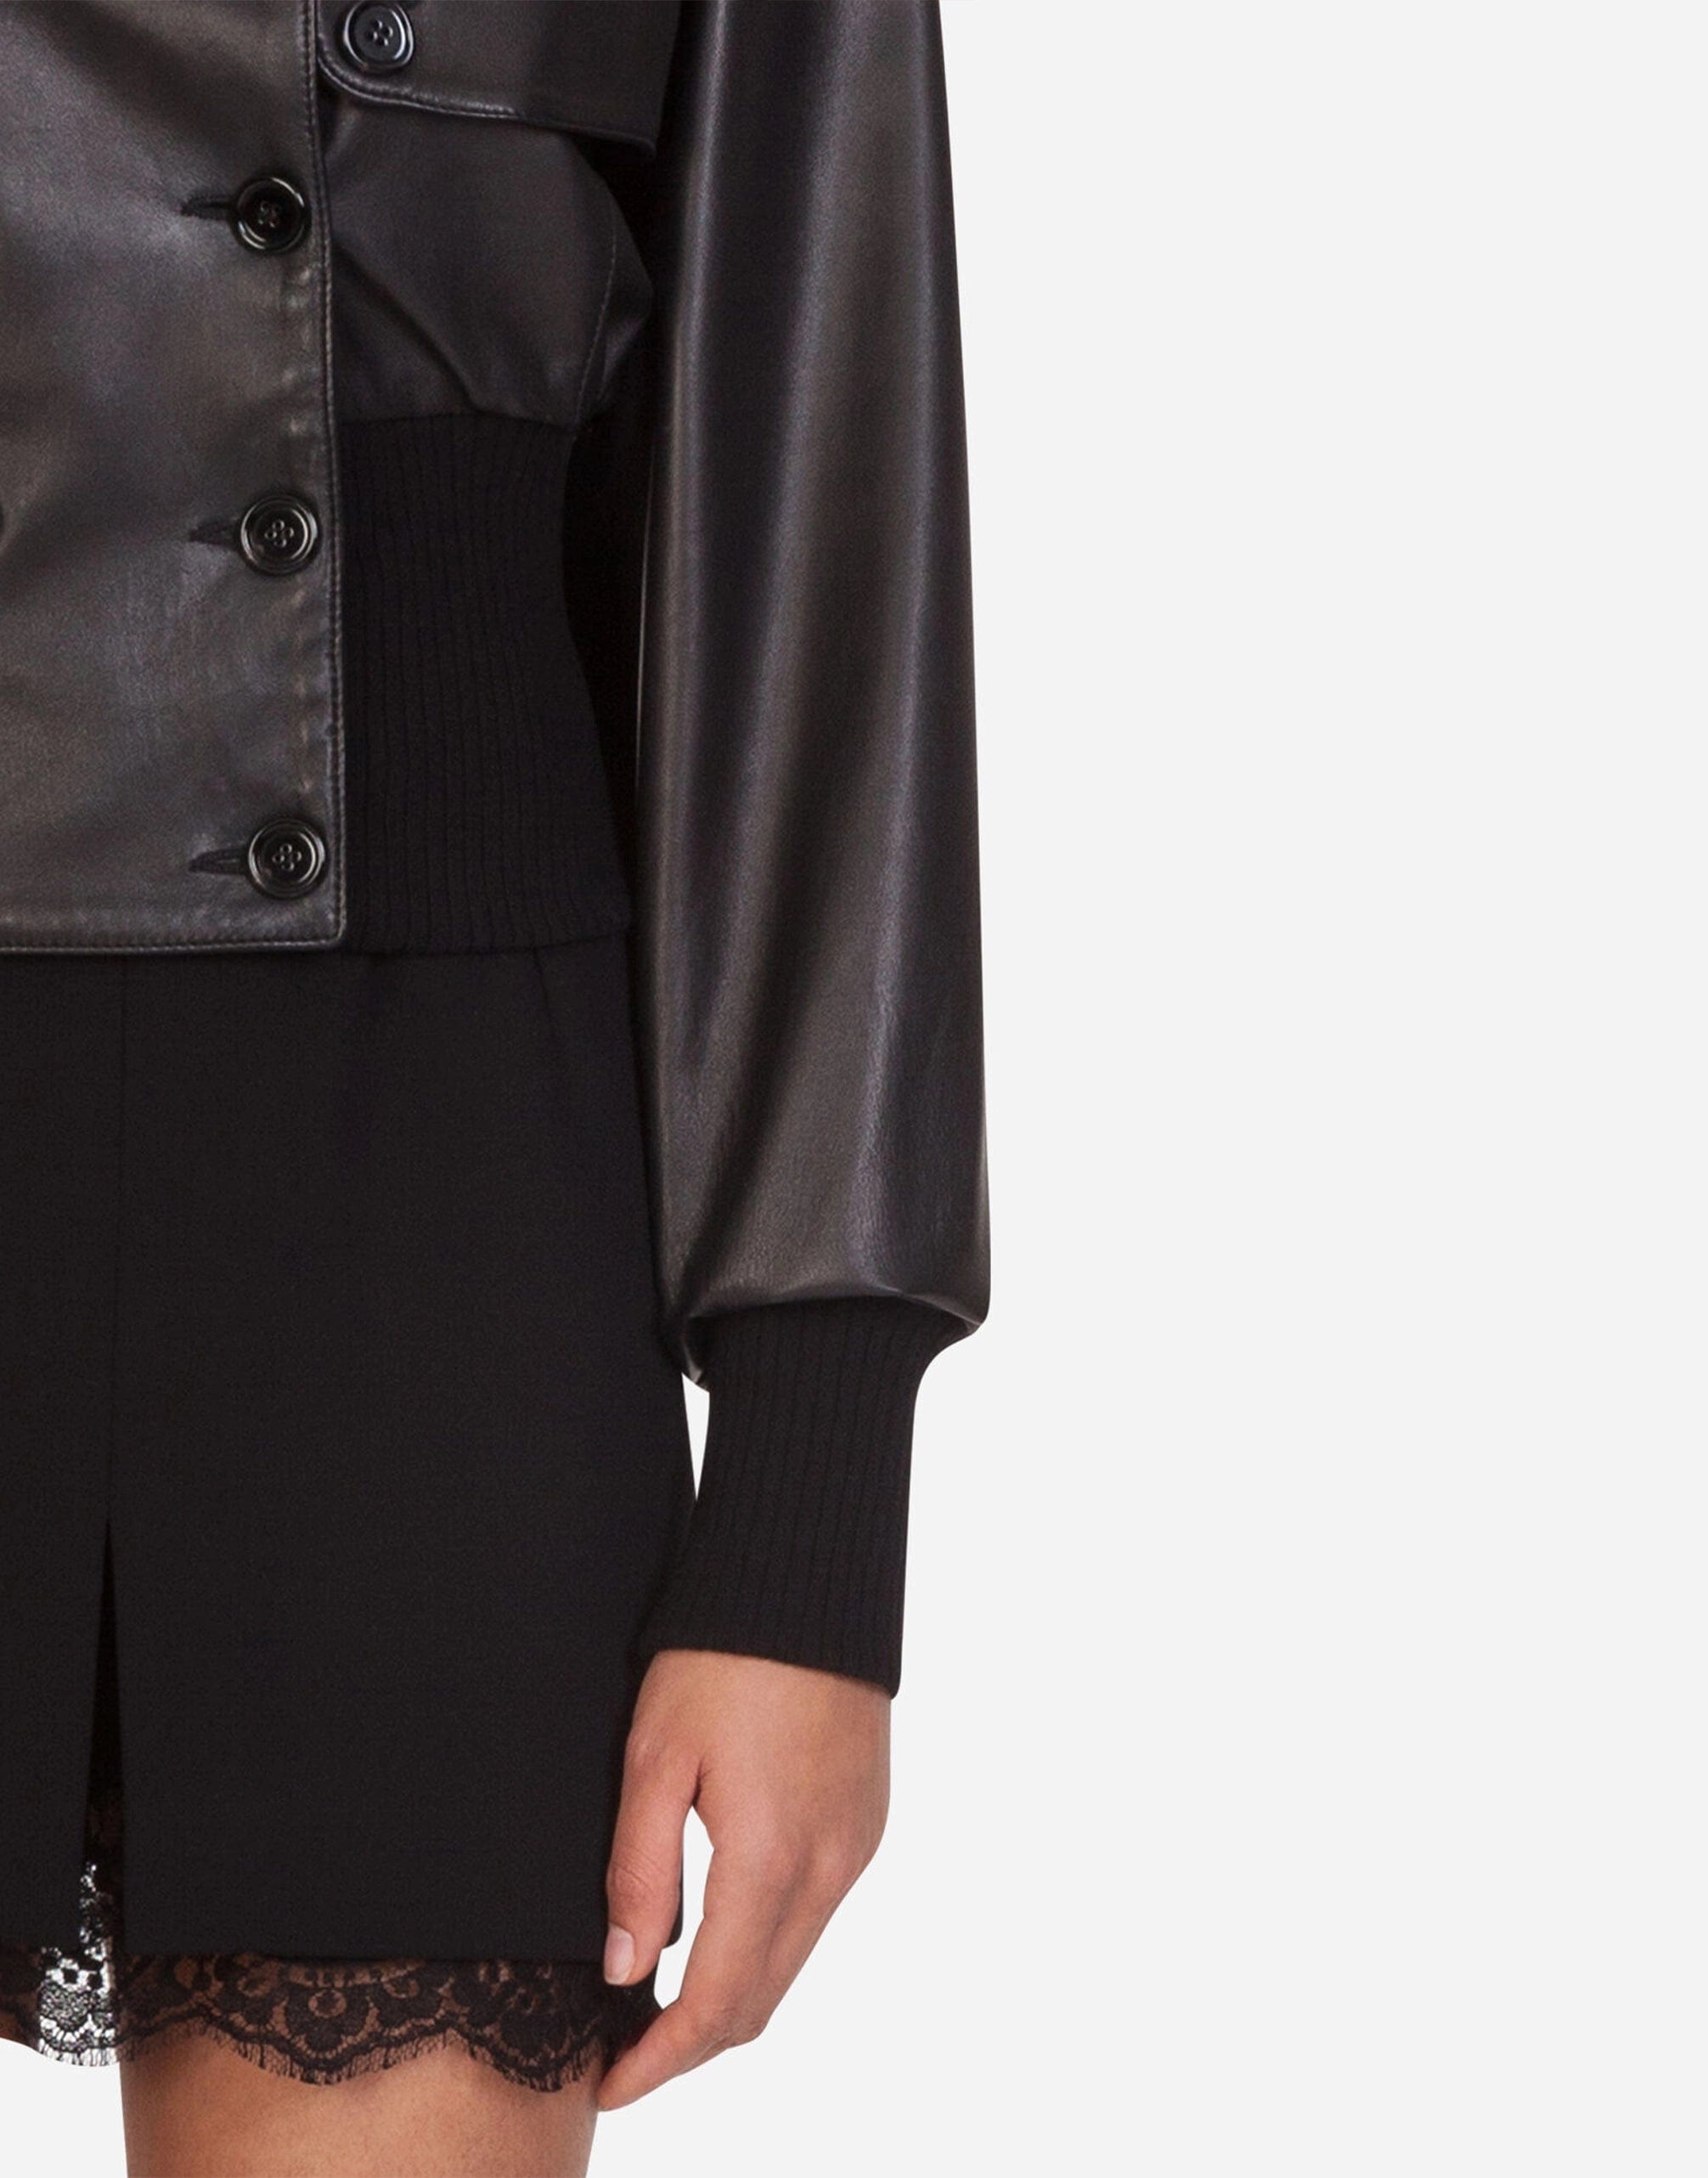 Dolce & Gabbana Leather Bomber Blouson Jacket